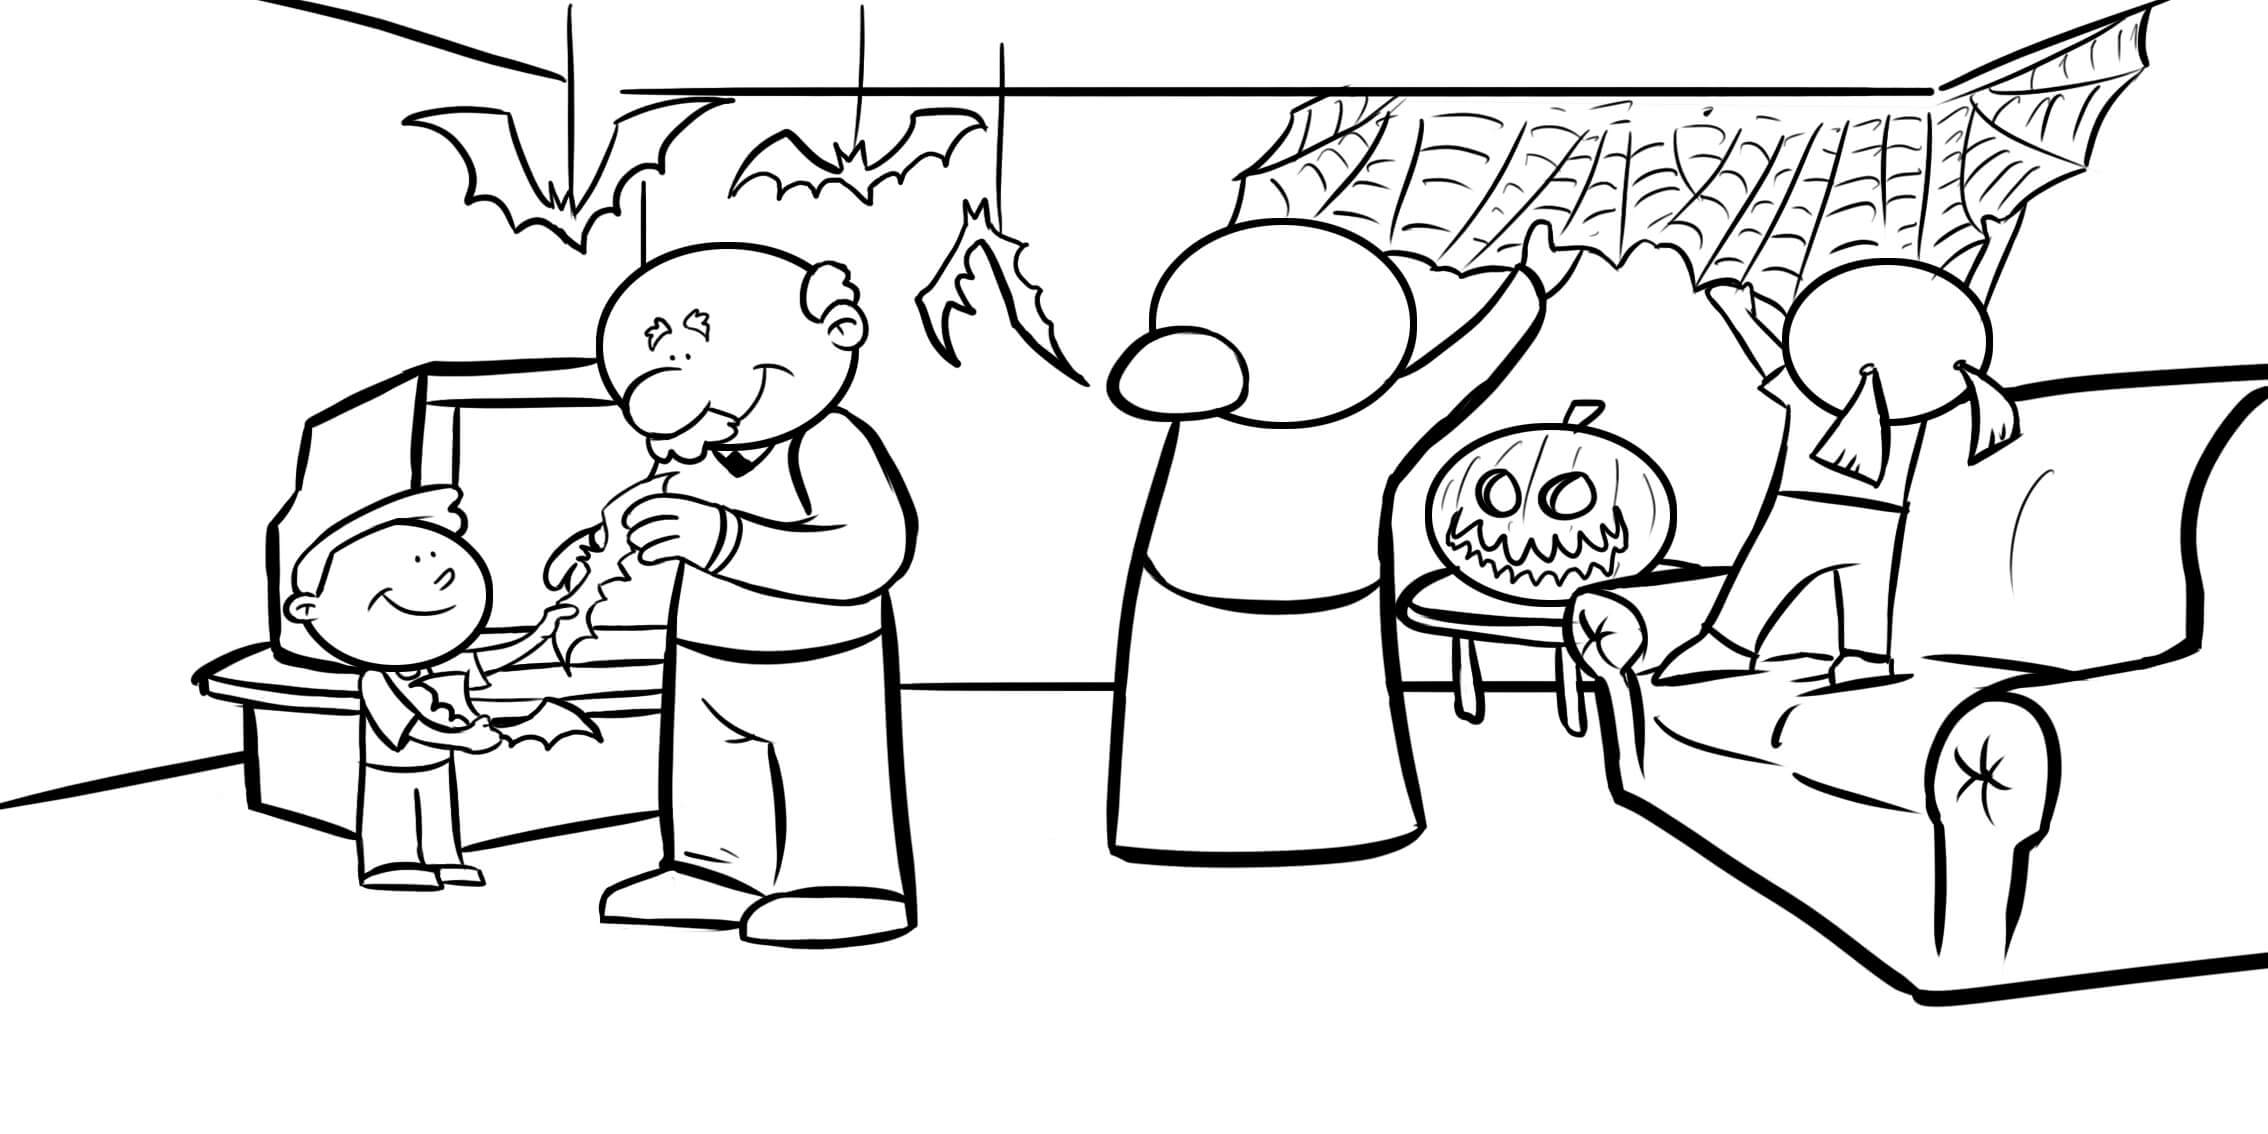 Prêt Pour Halloween coloring page